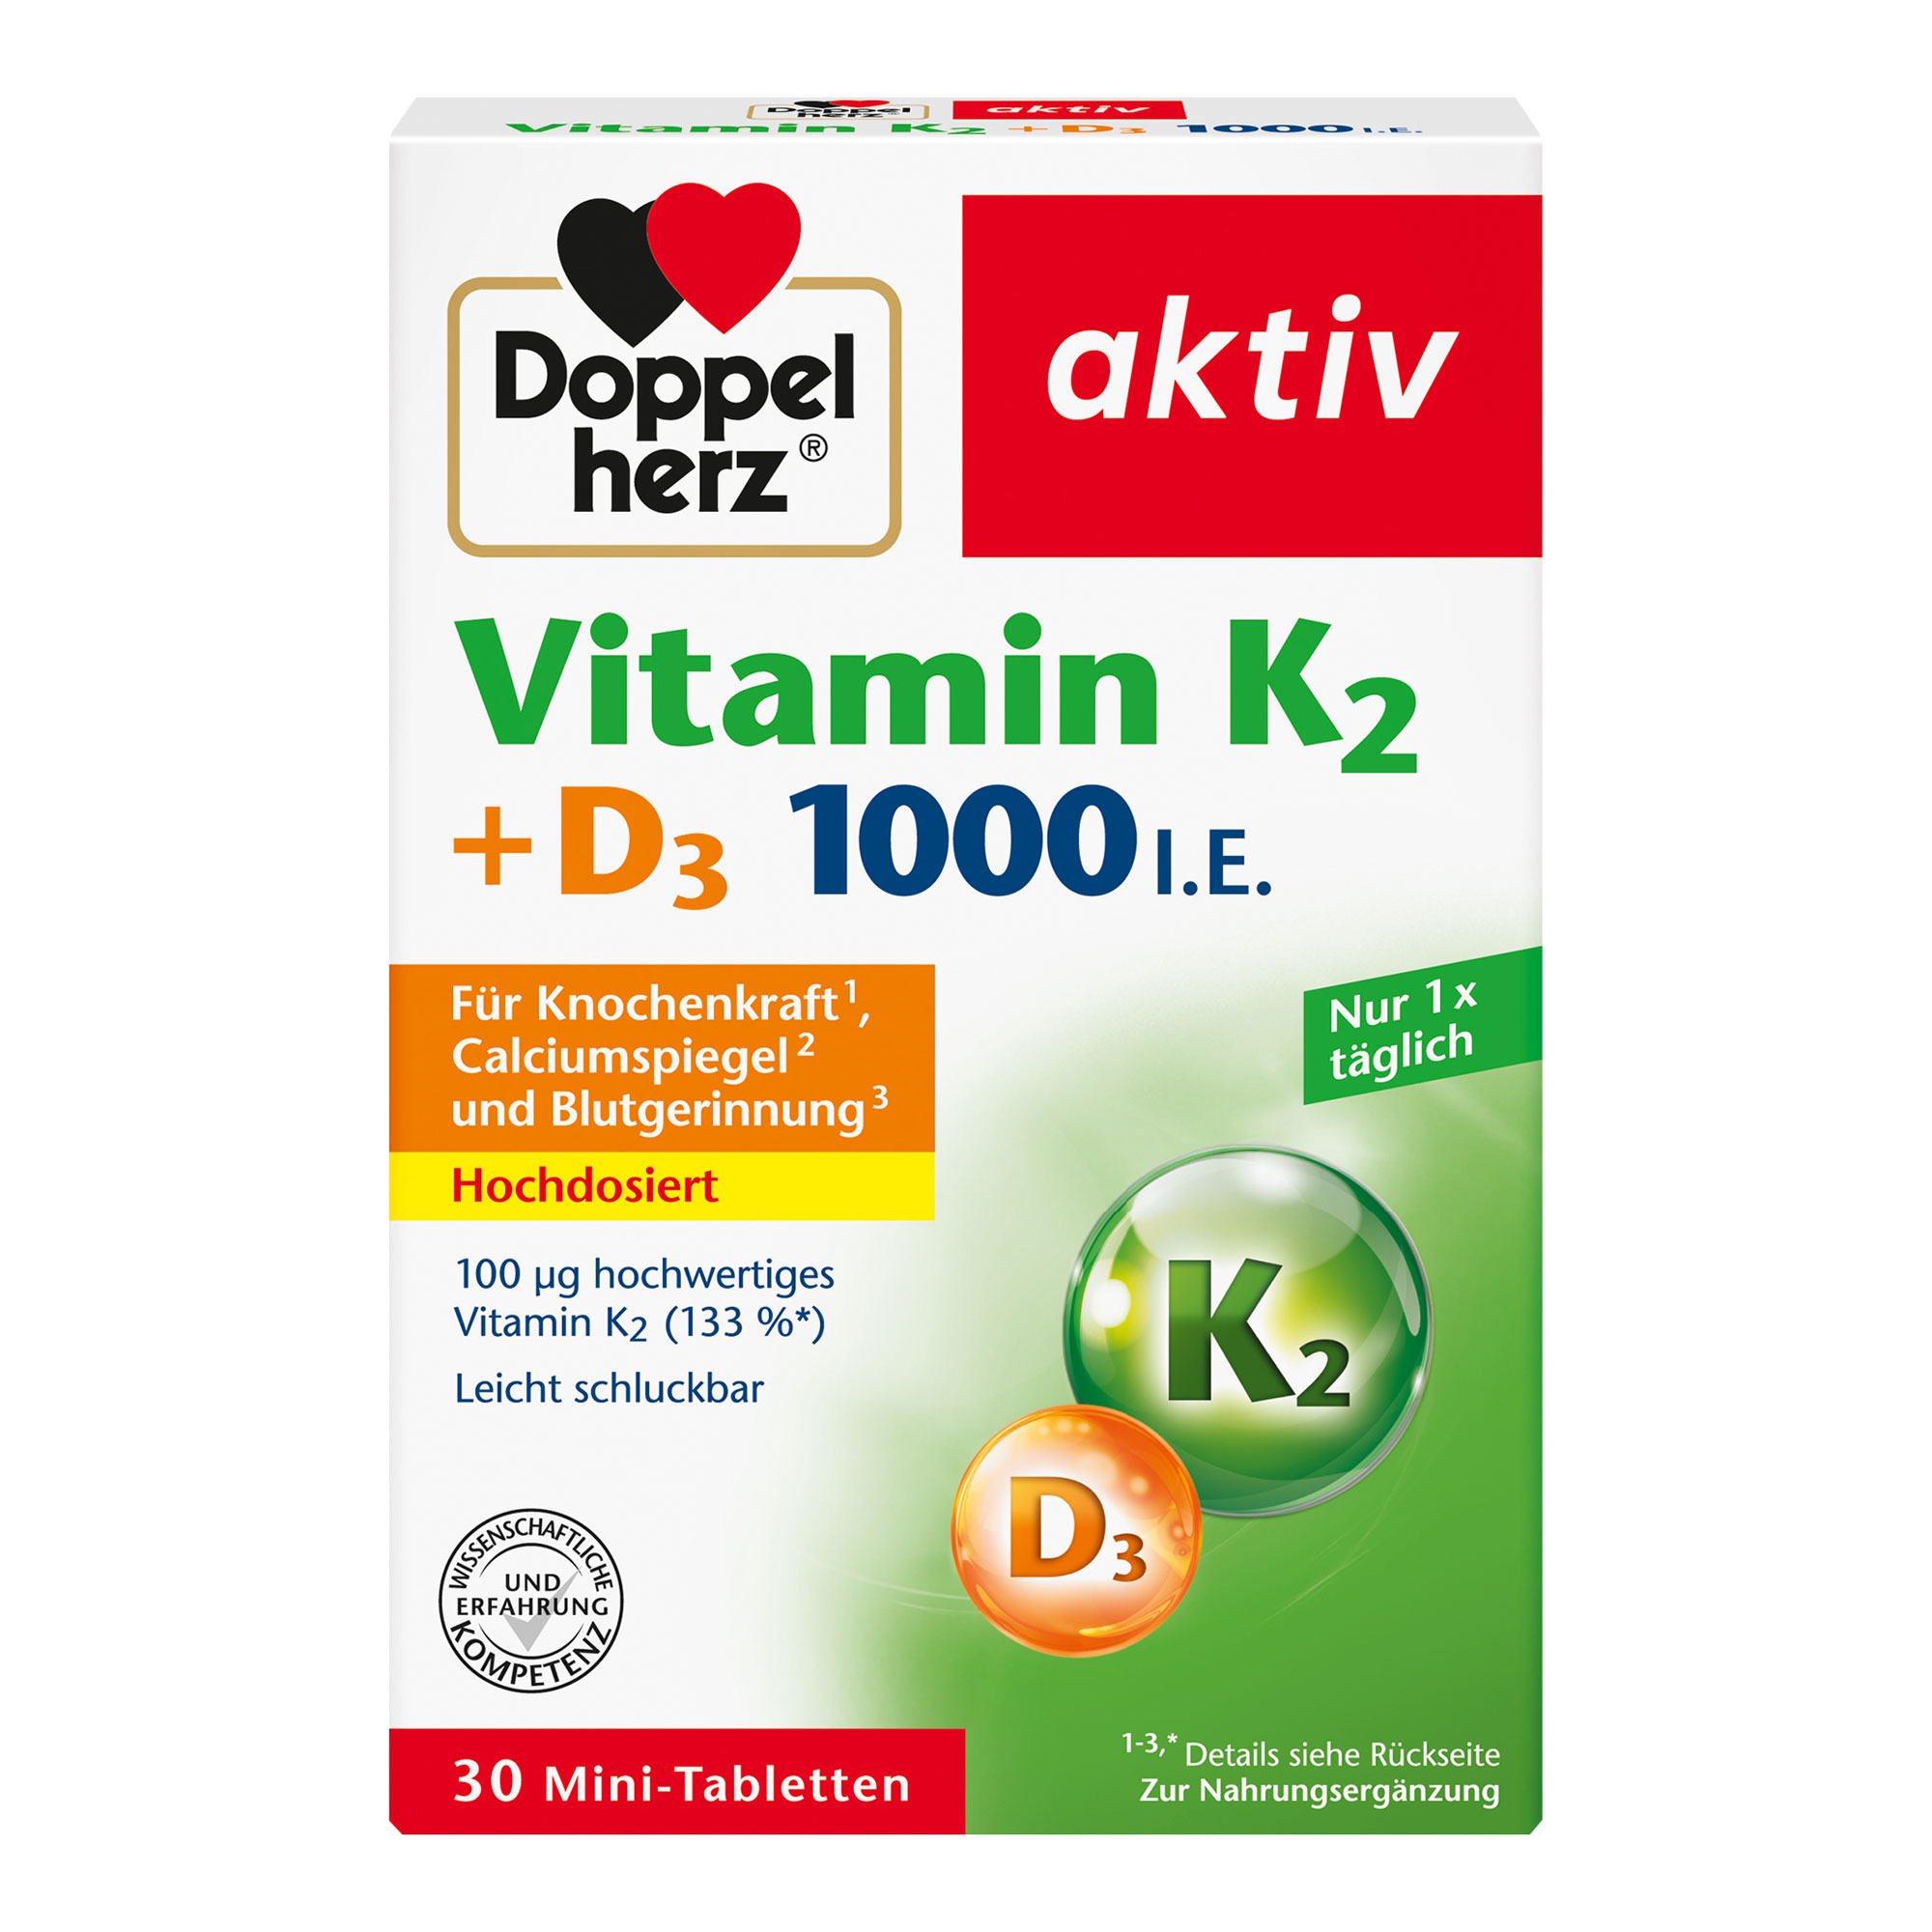 Nahrungsergänzungsmittel mit Vitamin K und Vitamin D.